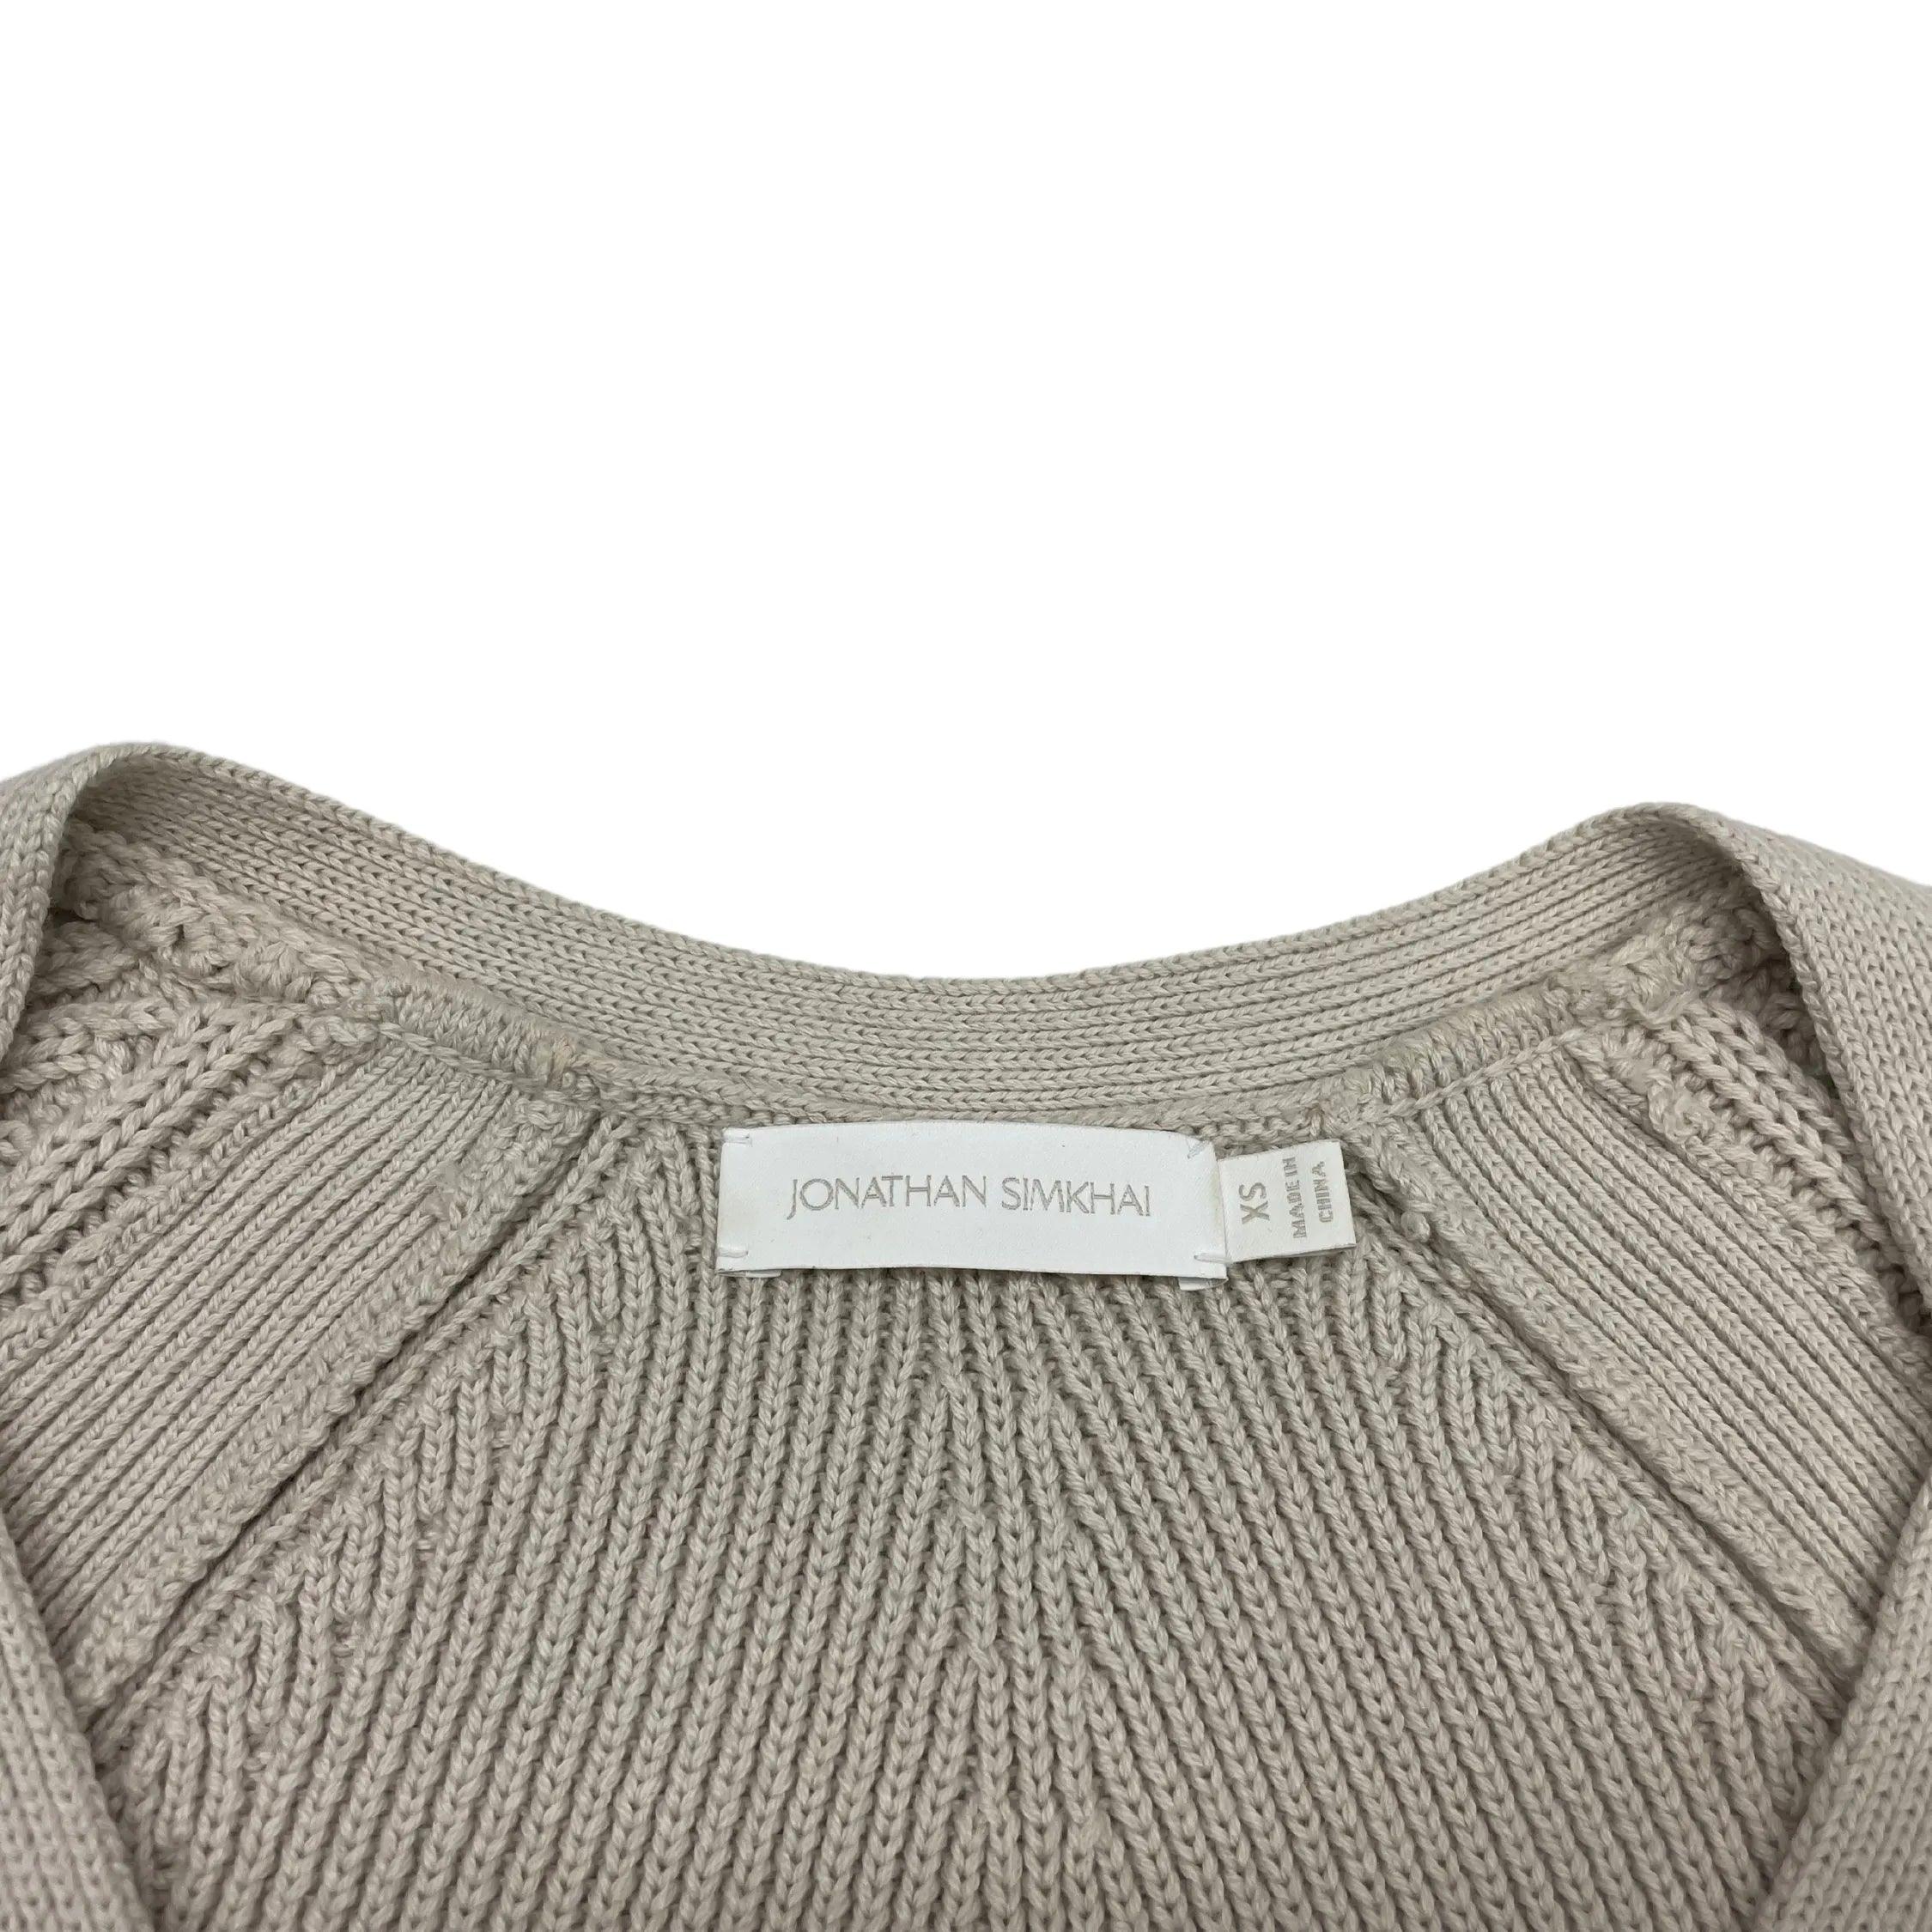 Jonathan Simkhai Sweater Set - Women's XS - Fashionably Yours